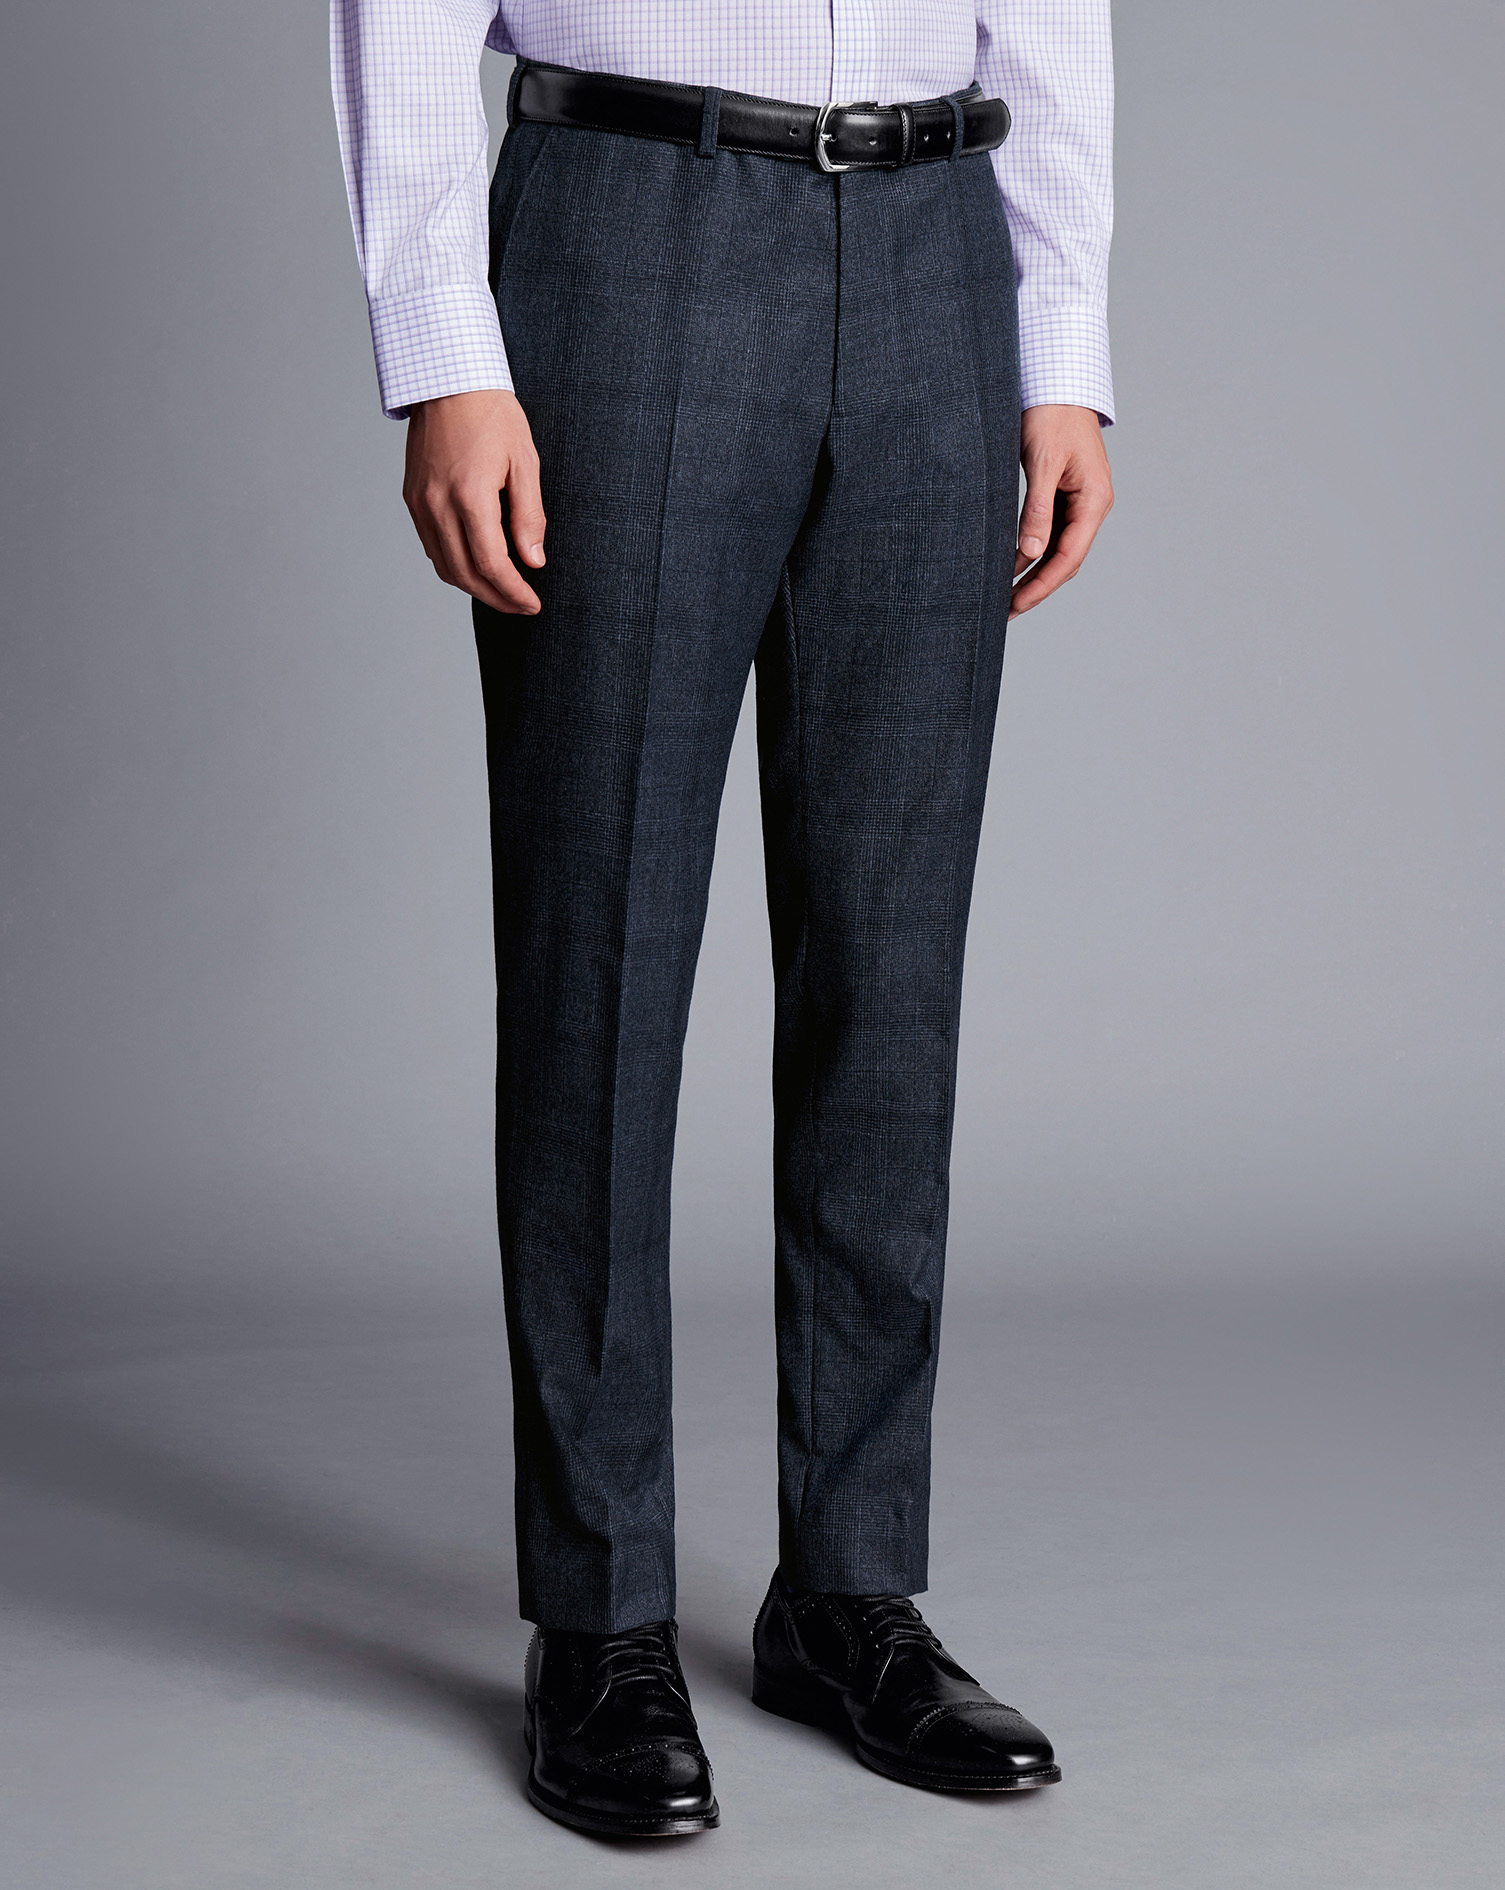 Men's Charles Tyrwhitt Check Suit Trousers - Denim Blue Size 38/32
